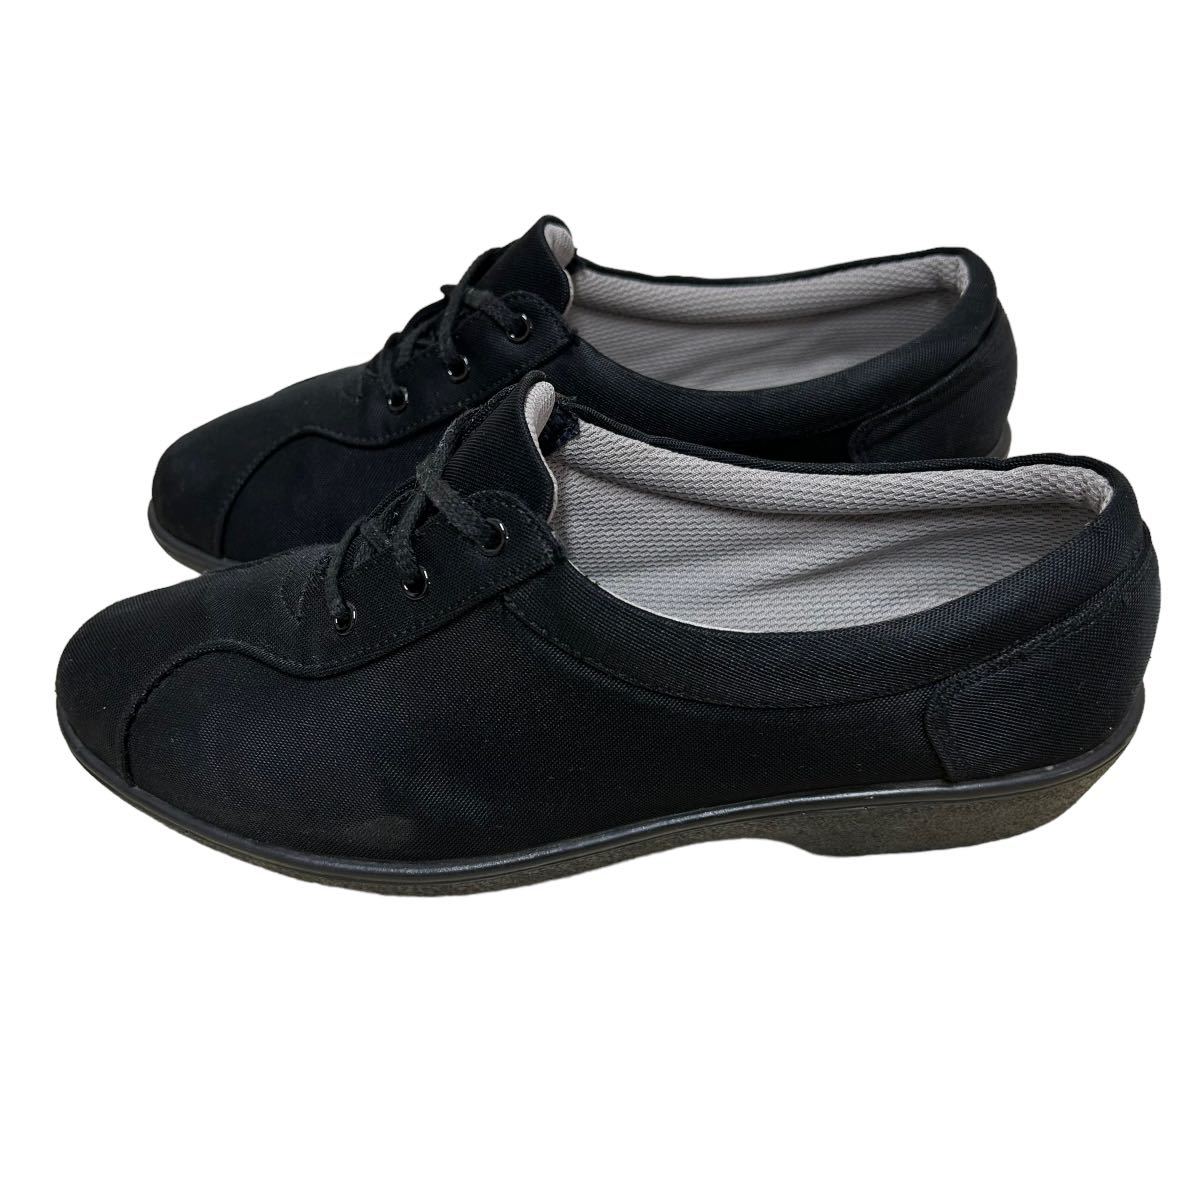 AL208 BEAGLE lady's walking shoes 23.5cm EEEE black excellent 